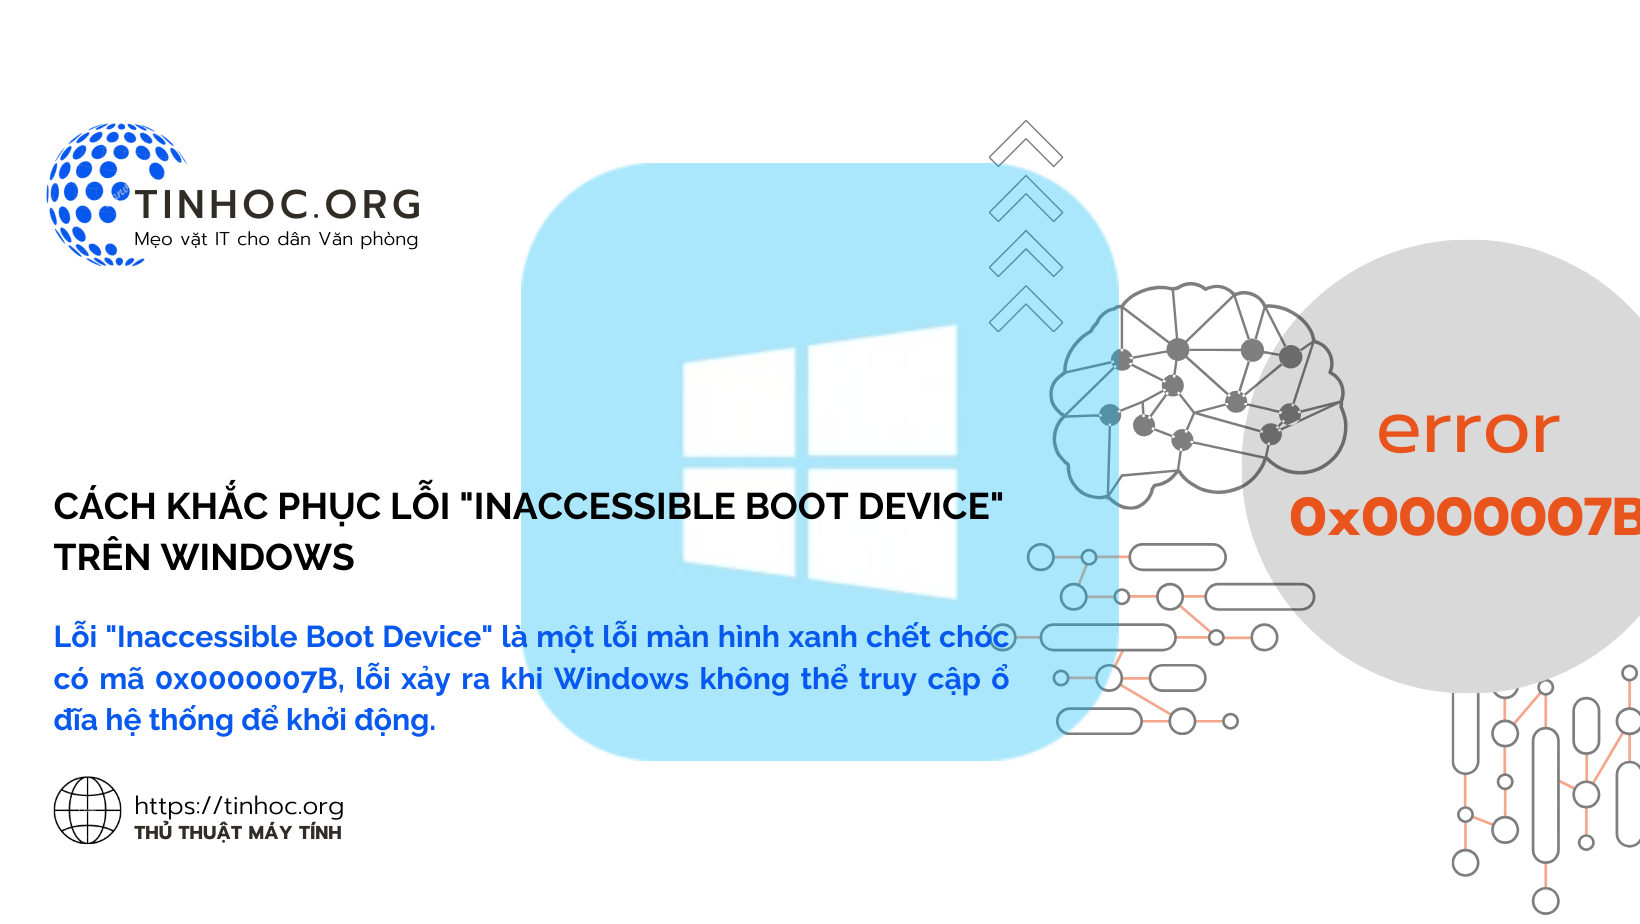 Lỗi "Inaccessible Boot Device" là một lỗi màn hình xanh chết chóc có mã 0x0000007B, lỗi xảy ra khi Windows không thể truy cập ổ đĩa hệ thống để khởi động.